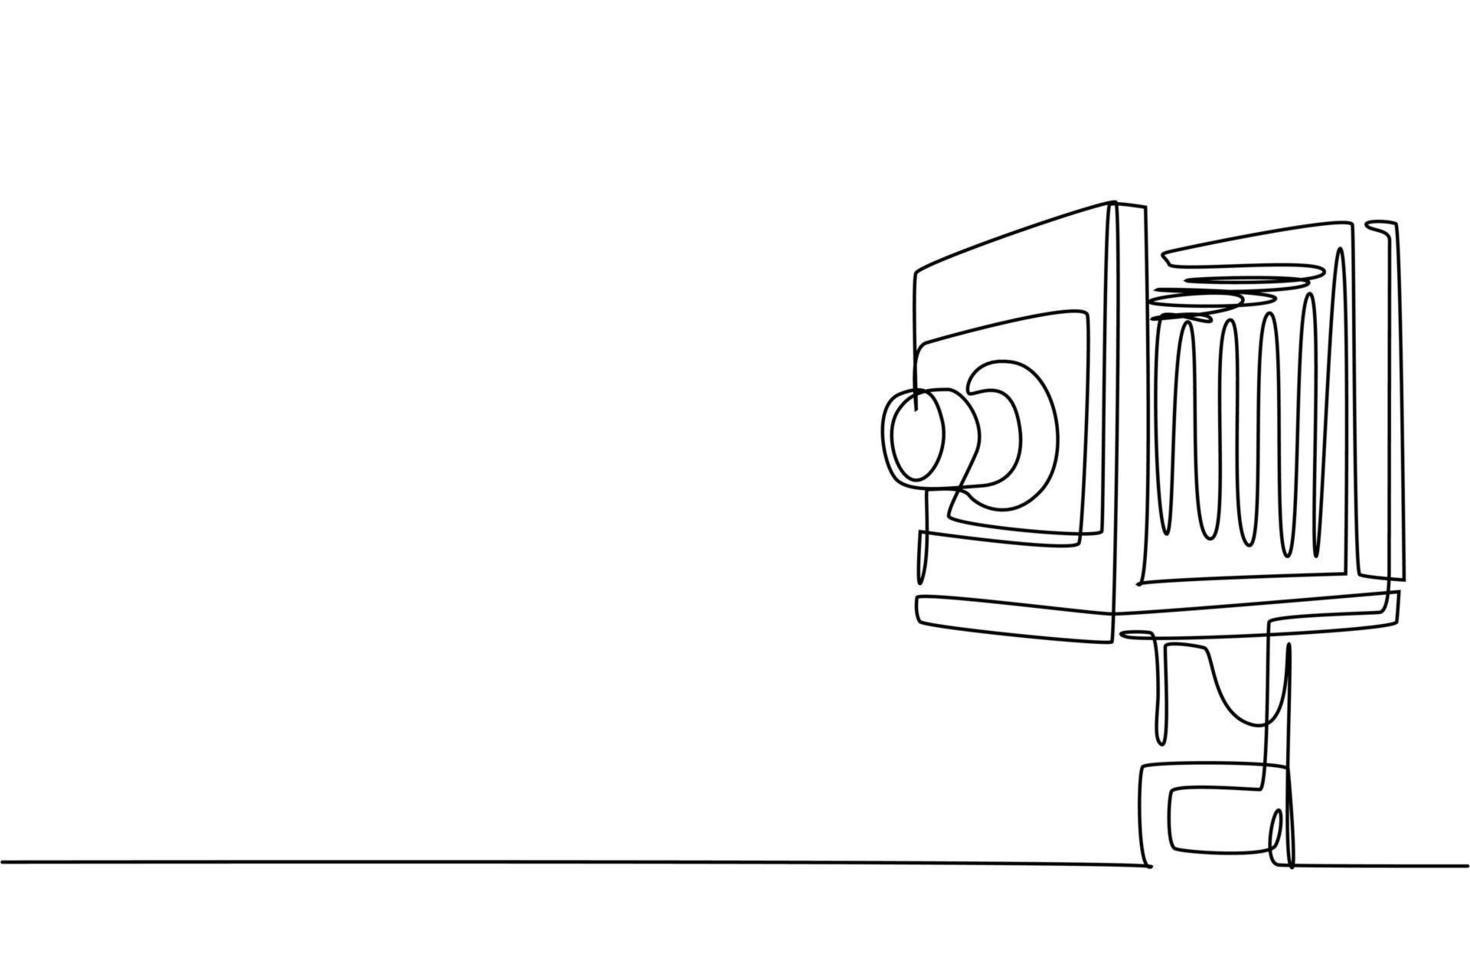 un dibujo de línea continua de formato medio de cámara de película retro antigua antigua. Vintage clásico antiguo equipo de fotografía concepto de dibujo de una sola línea de diseño gráfico ilustración vectorial vector